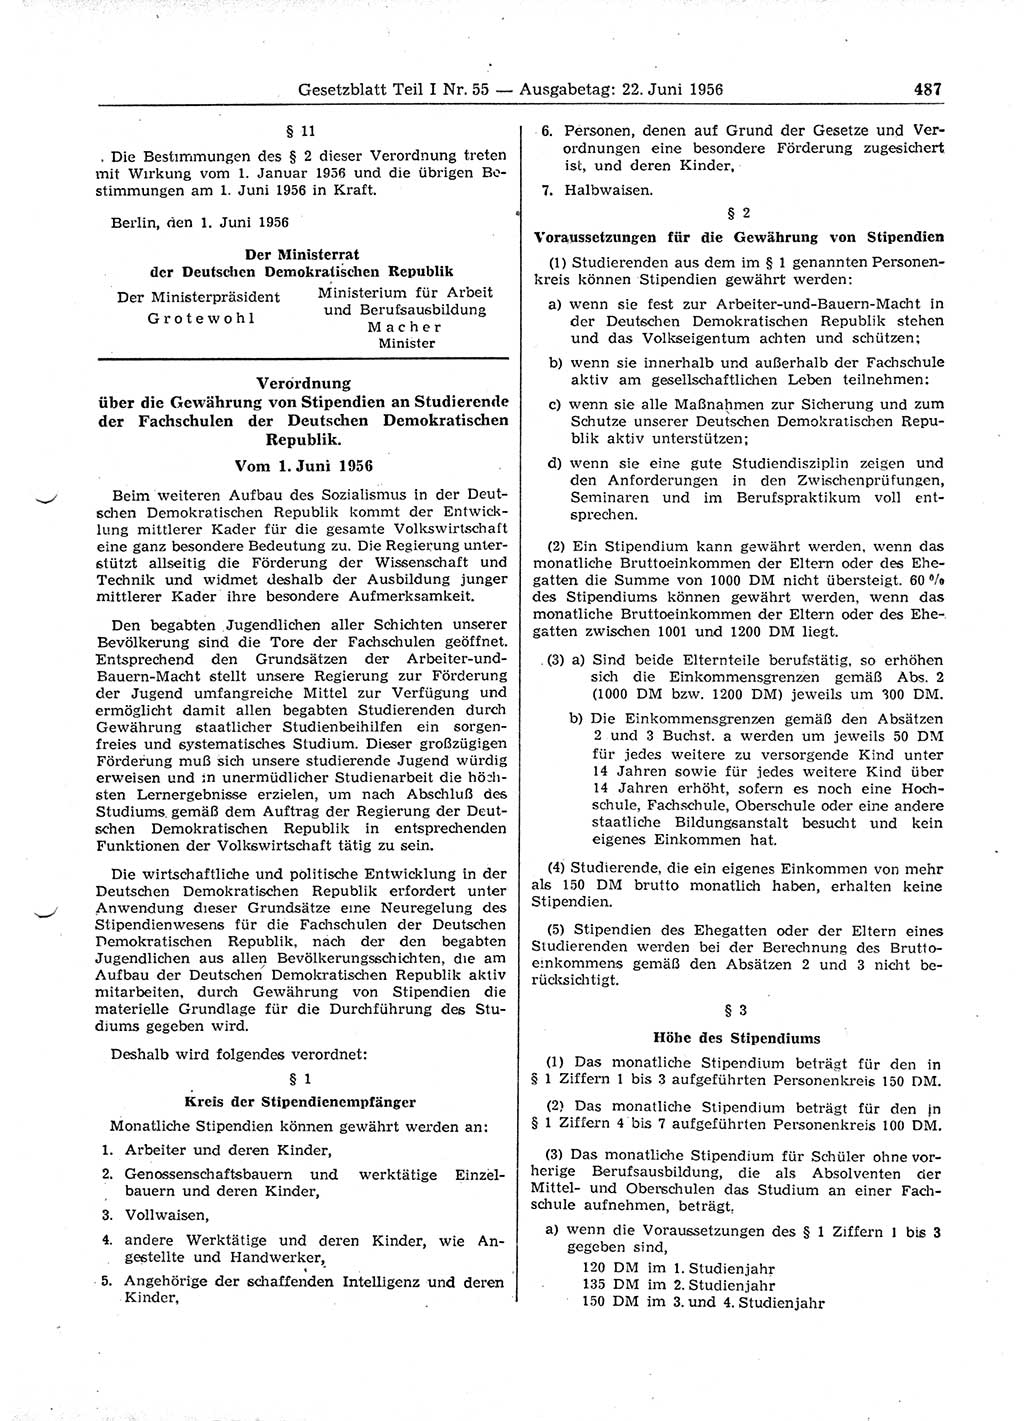 Gesetzblatt (GBl.) der Deutschen Demokratischen Republik (DDR) Teil Ⅰ 1956, Seite 487 (GBl. DDR Ⅰ 1956, S. 487)